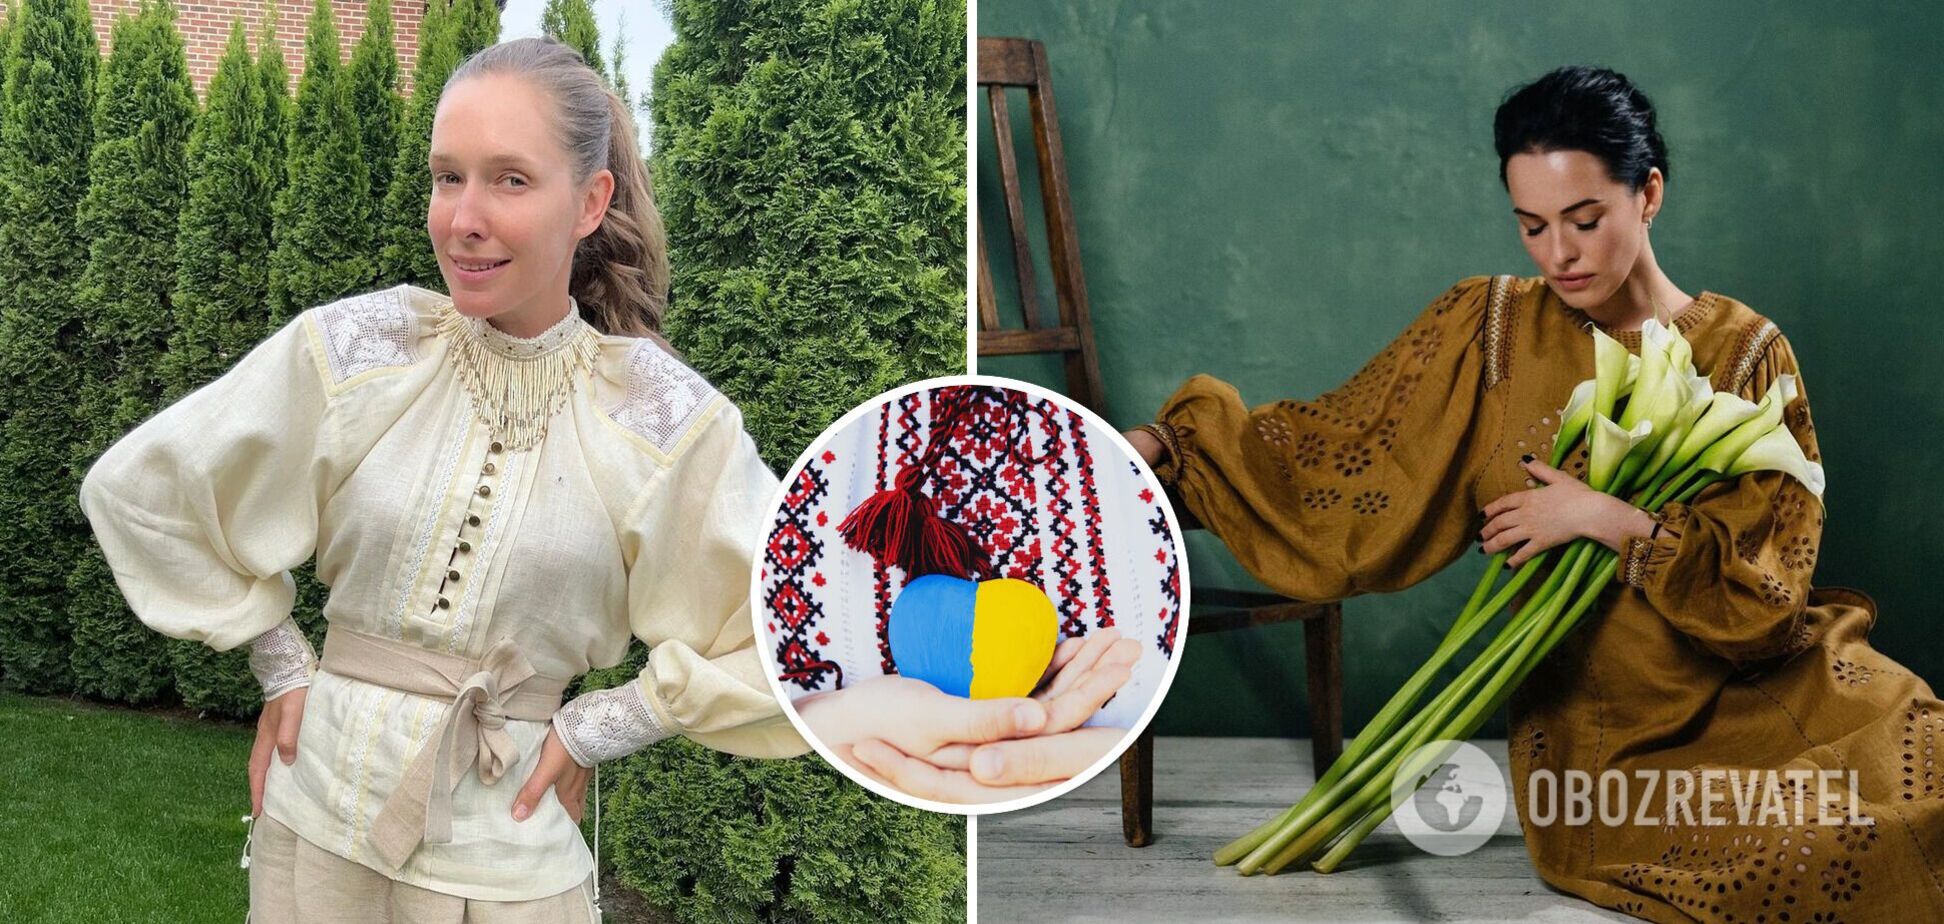 'Наш генетичний код, національна гордість': українські зірки вразили своїми образами у День вишиванки. Фото